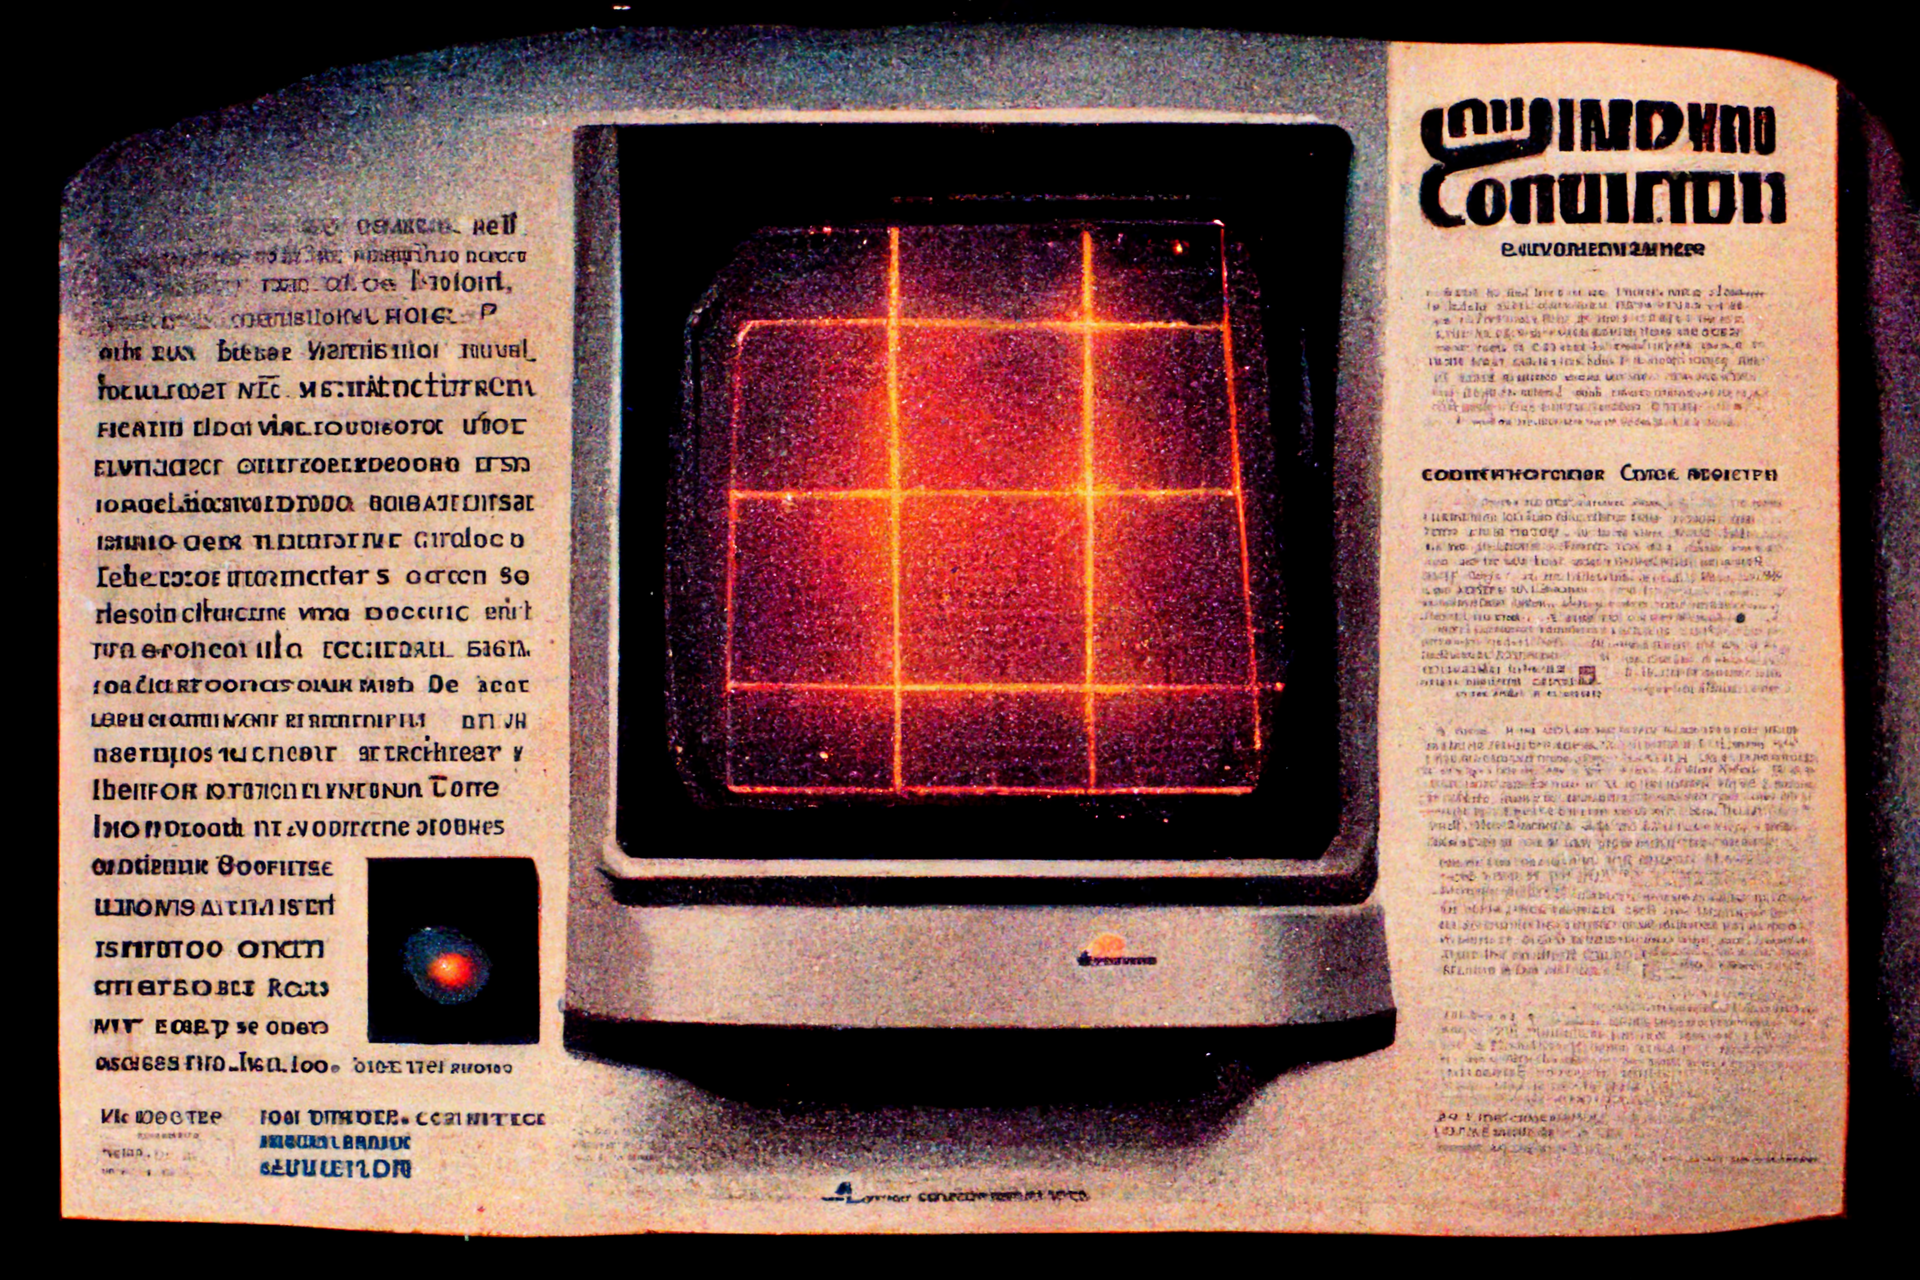 VisiteurNoir_The_super_computer_Raymondium_ad_from_1982_magazin_a0de0806-48c9-4b3a-a843-869bca5541f6.png